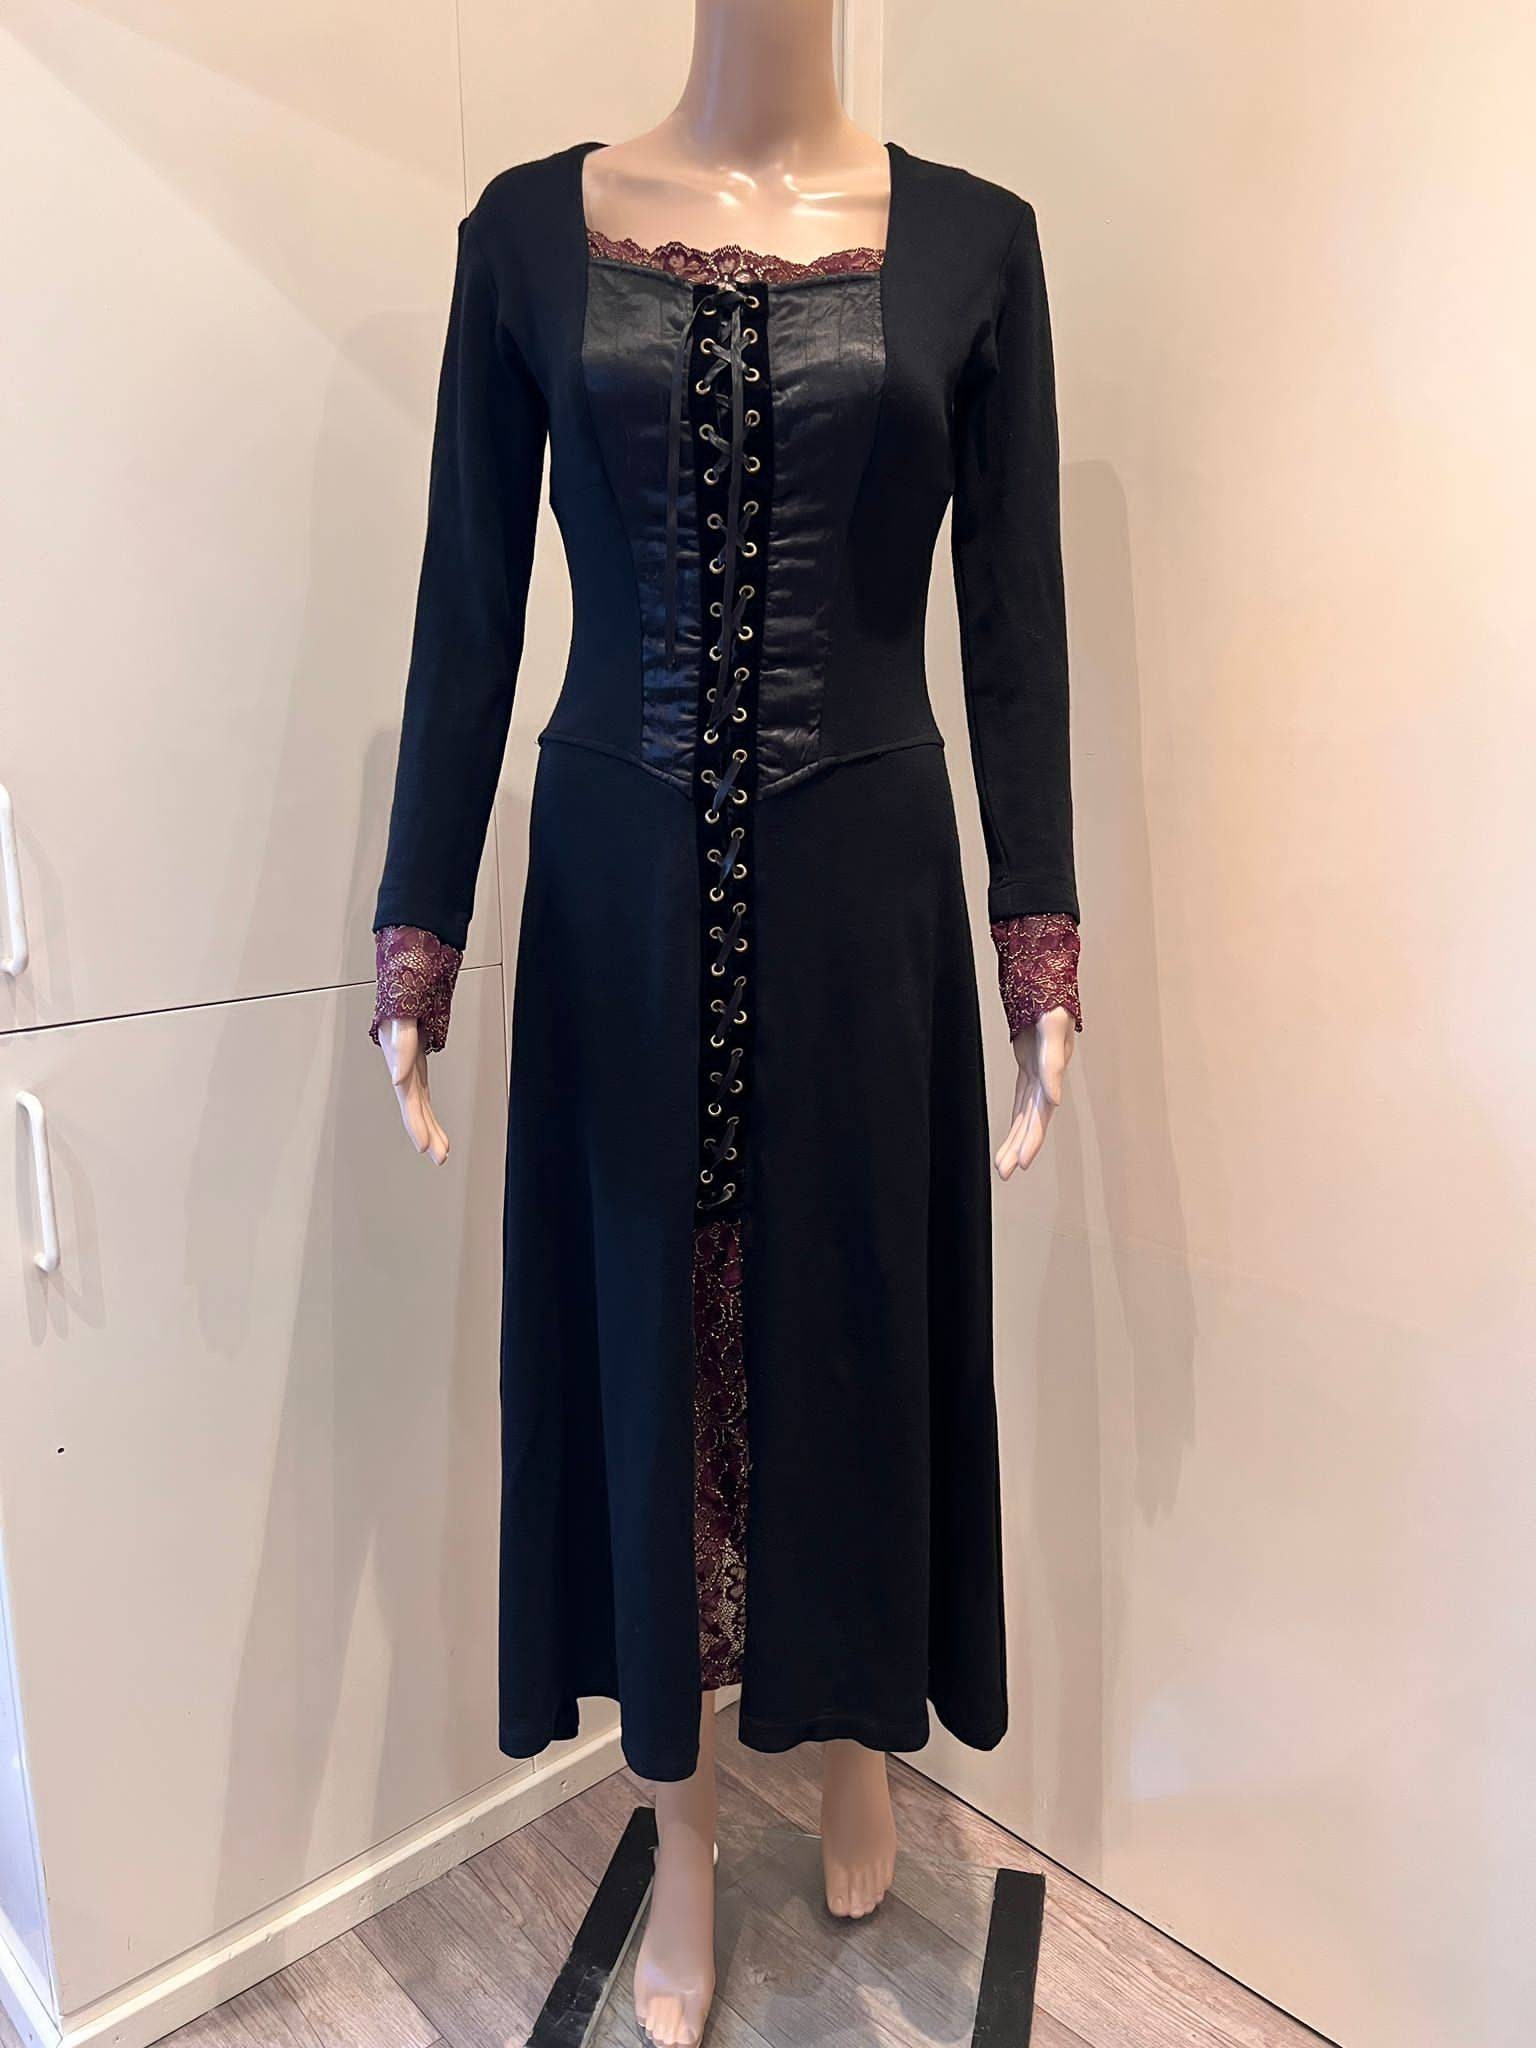 Renaissance Rare Corset Dress France Paris | Etsy